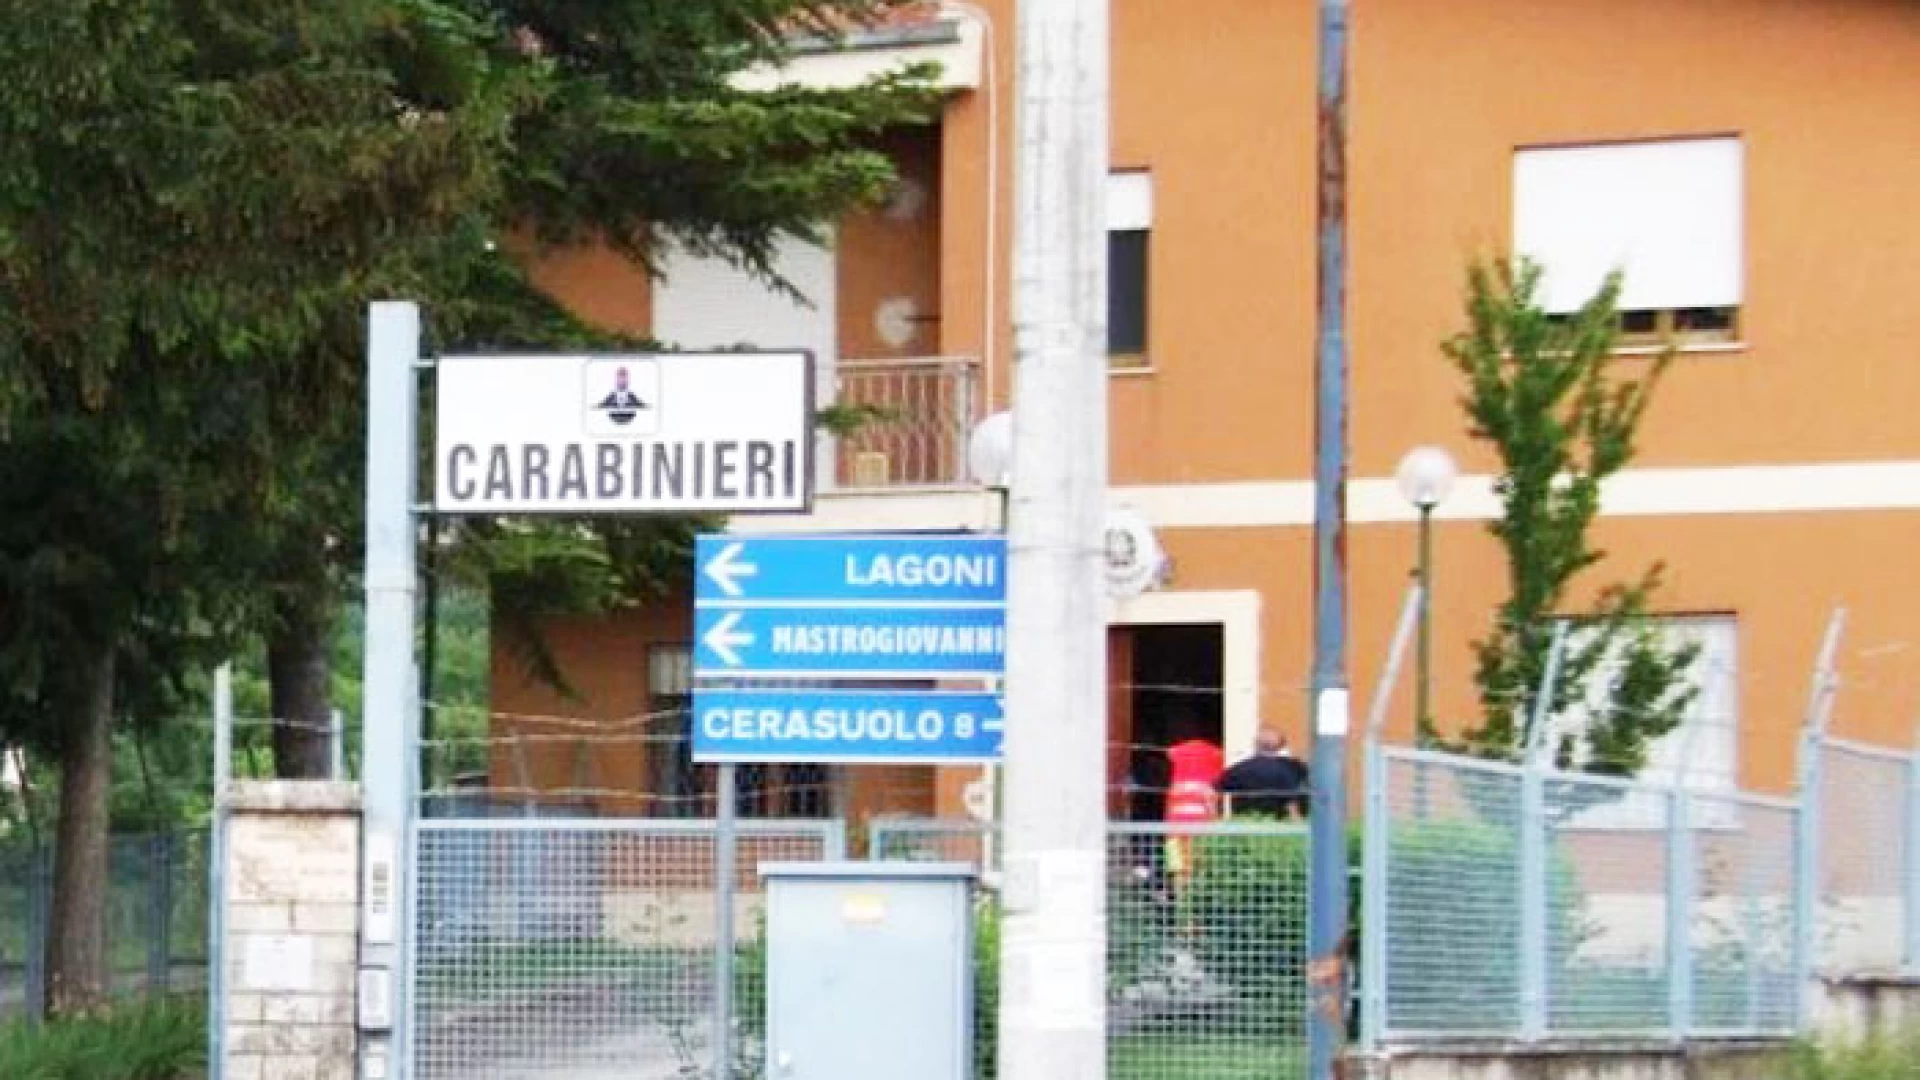 La casa di Franco Rossi a Filignano preso di mira da balordi. Imbrattati i muri con scritte minacciose.